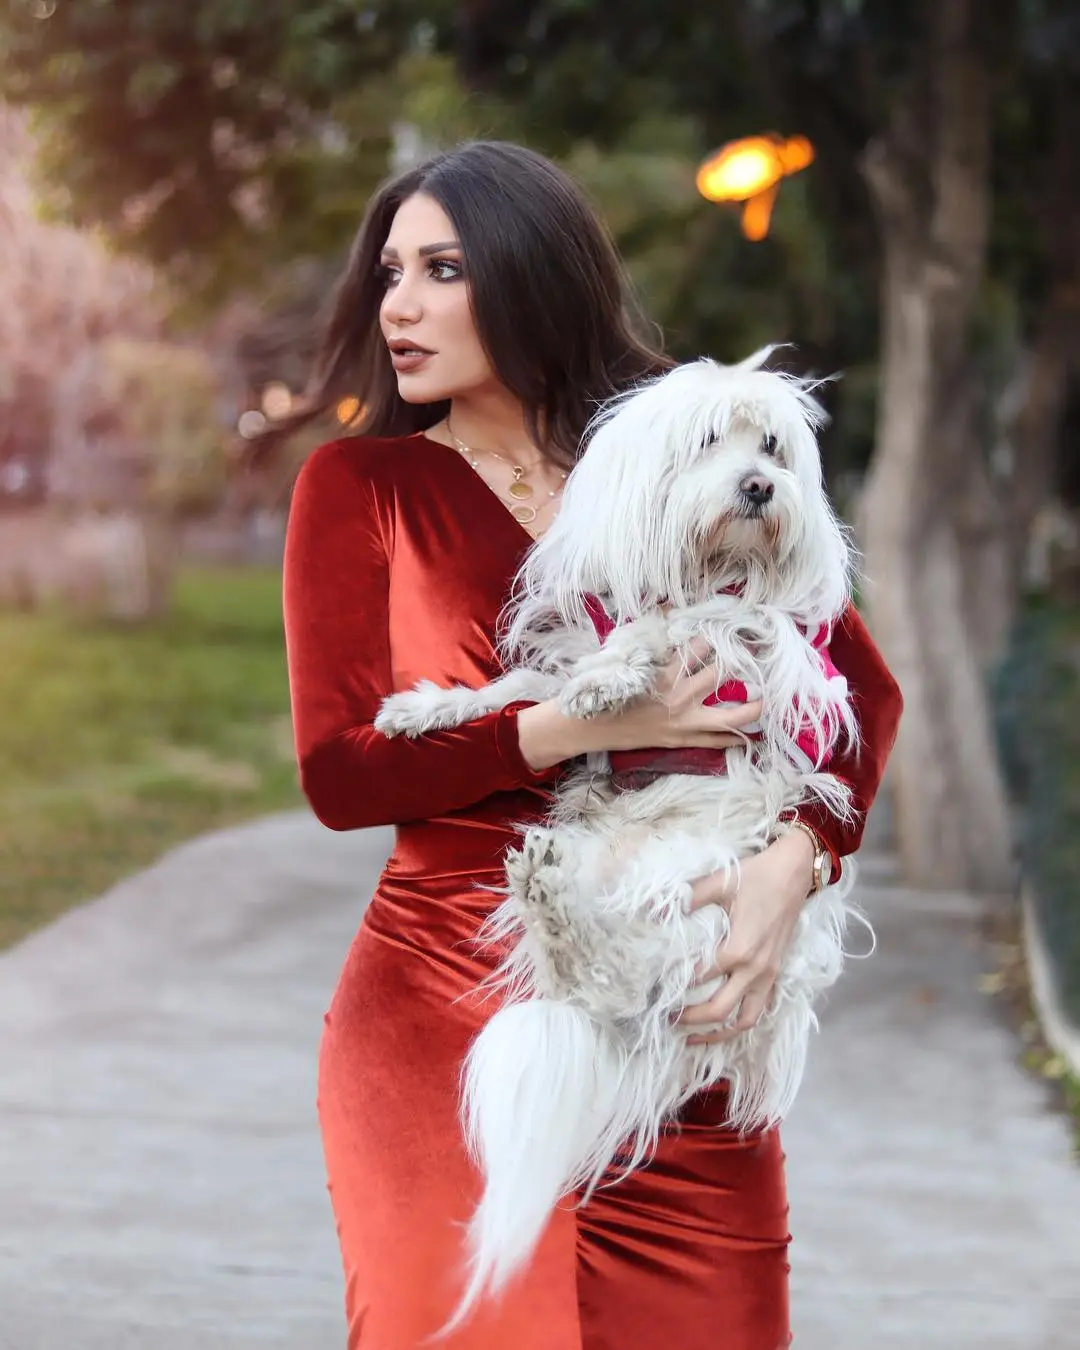 شهادة حق .. الممثلة السورية سارة نخلة عضها كلب .. هذا ما حدث معها فى مستشفى زايد التخصصى